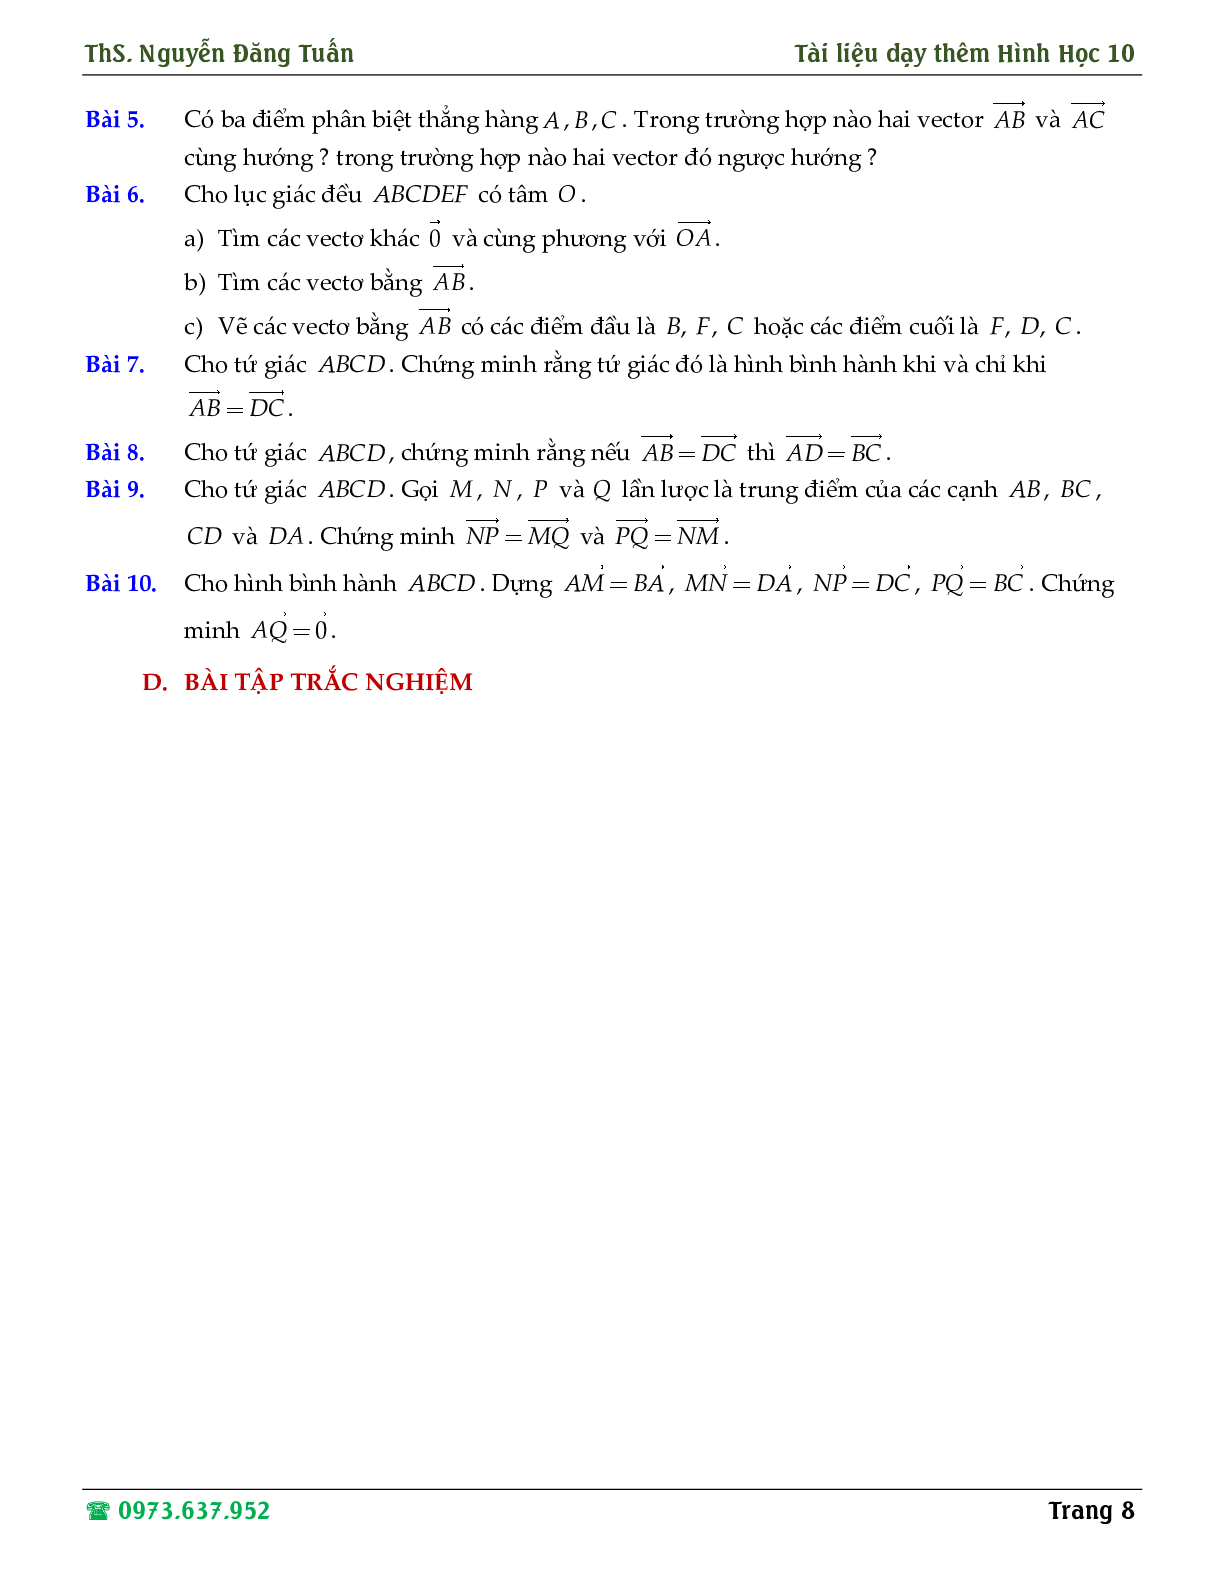 Hướng dẫn giải các dạng toán về định nghĩa vector, tổng và hiệu hai vector (trang 8)